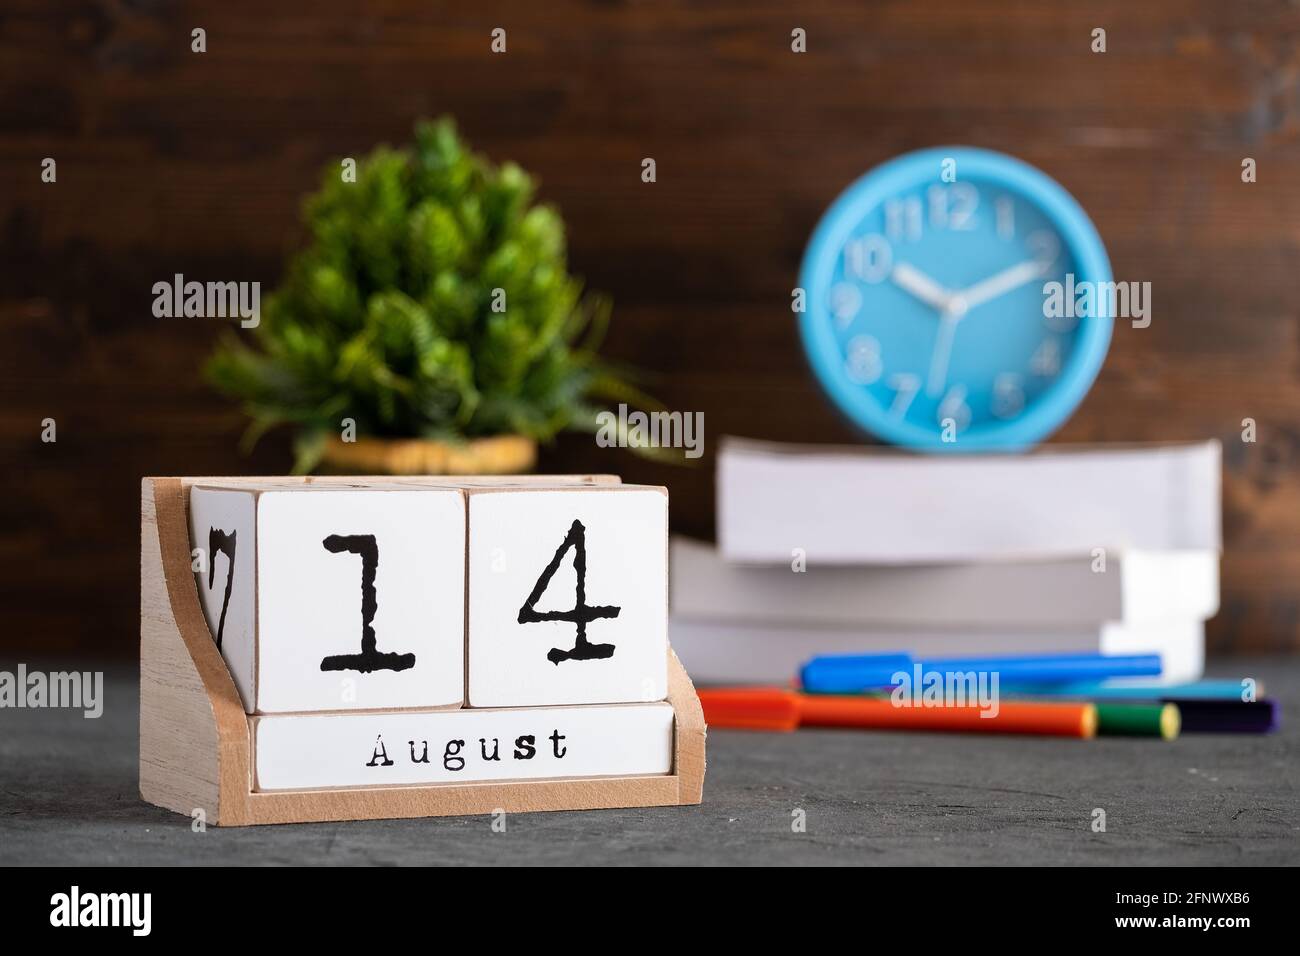 14 août. Août 14 calendrier cube en bois avec des objets flous sur fond. Banque D'Images